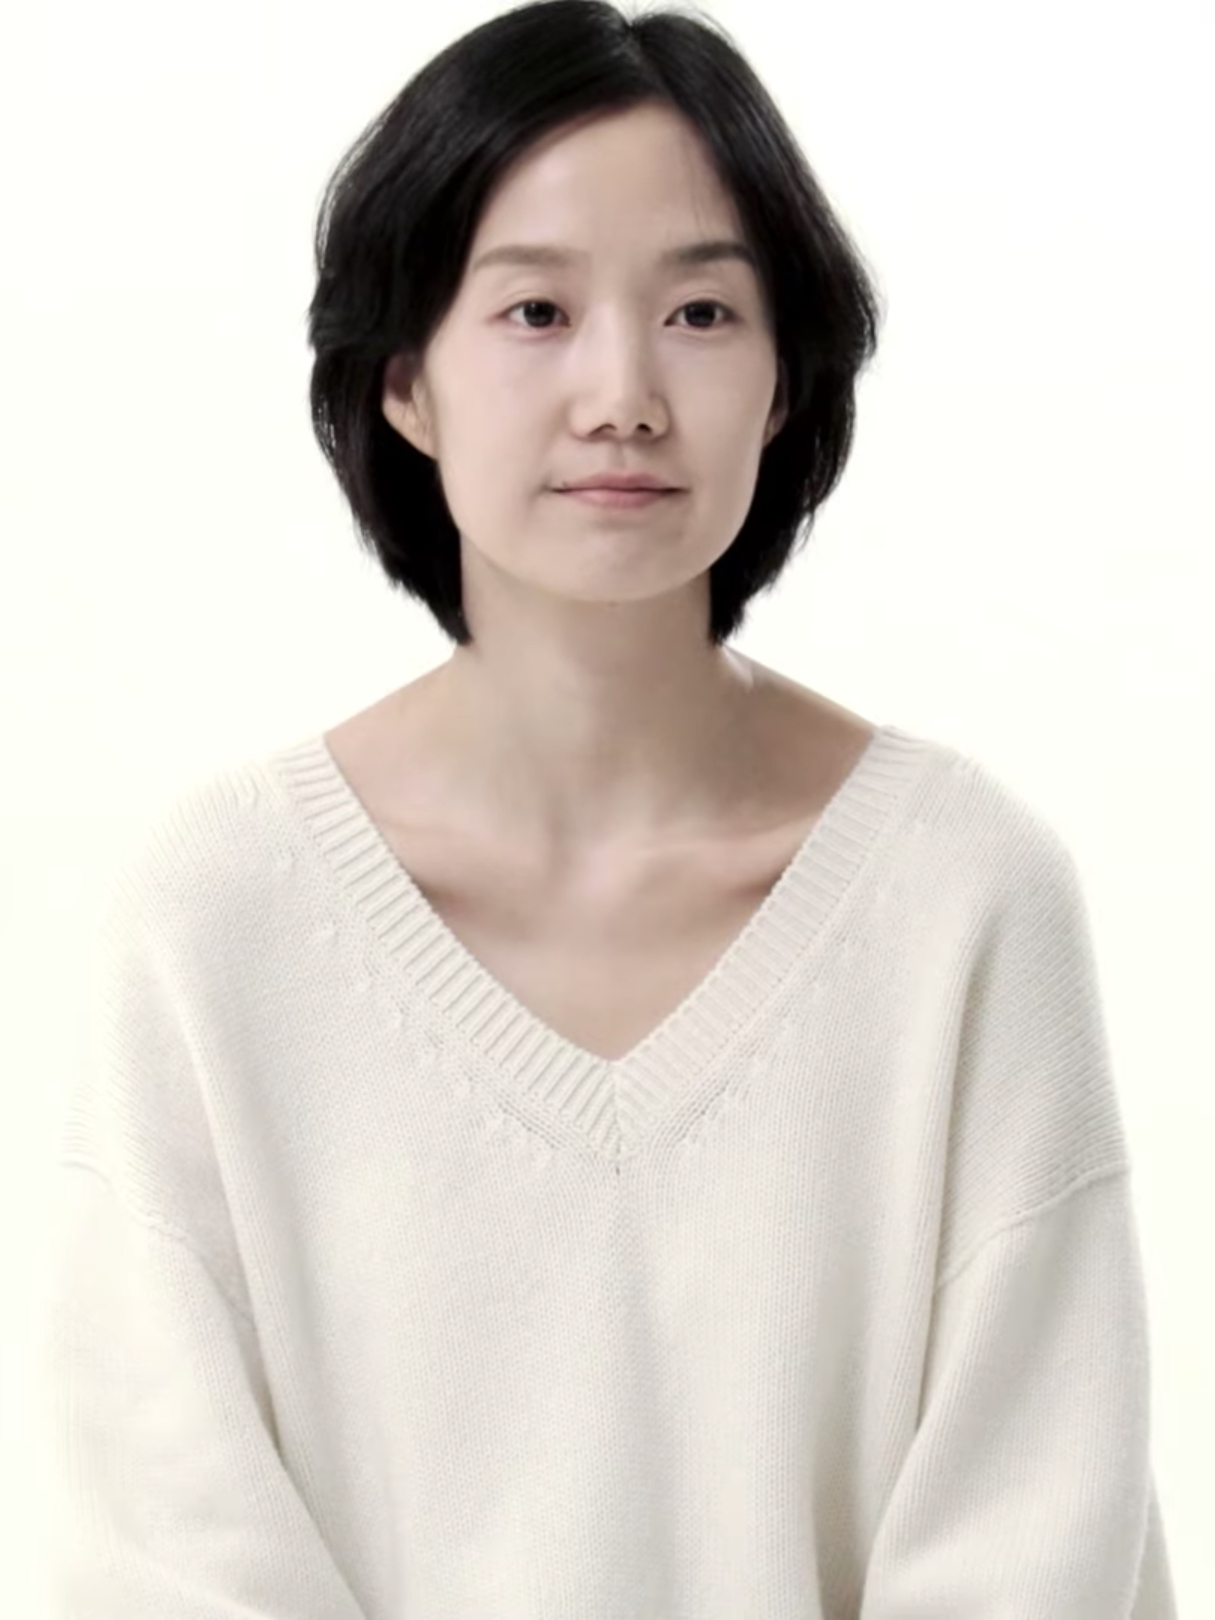 김시은 배우 1987 나이 프로필 키 화보 출연작 결혼 과거 리즈 드라마 영화